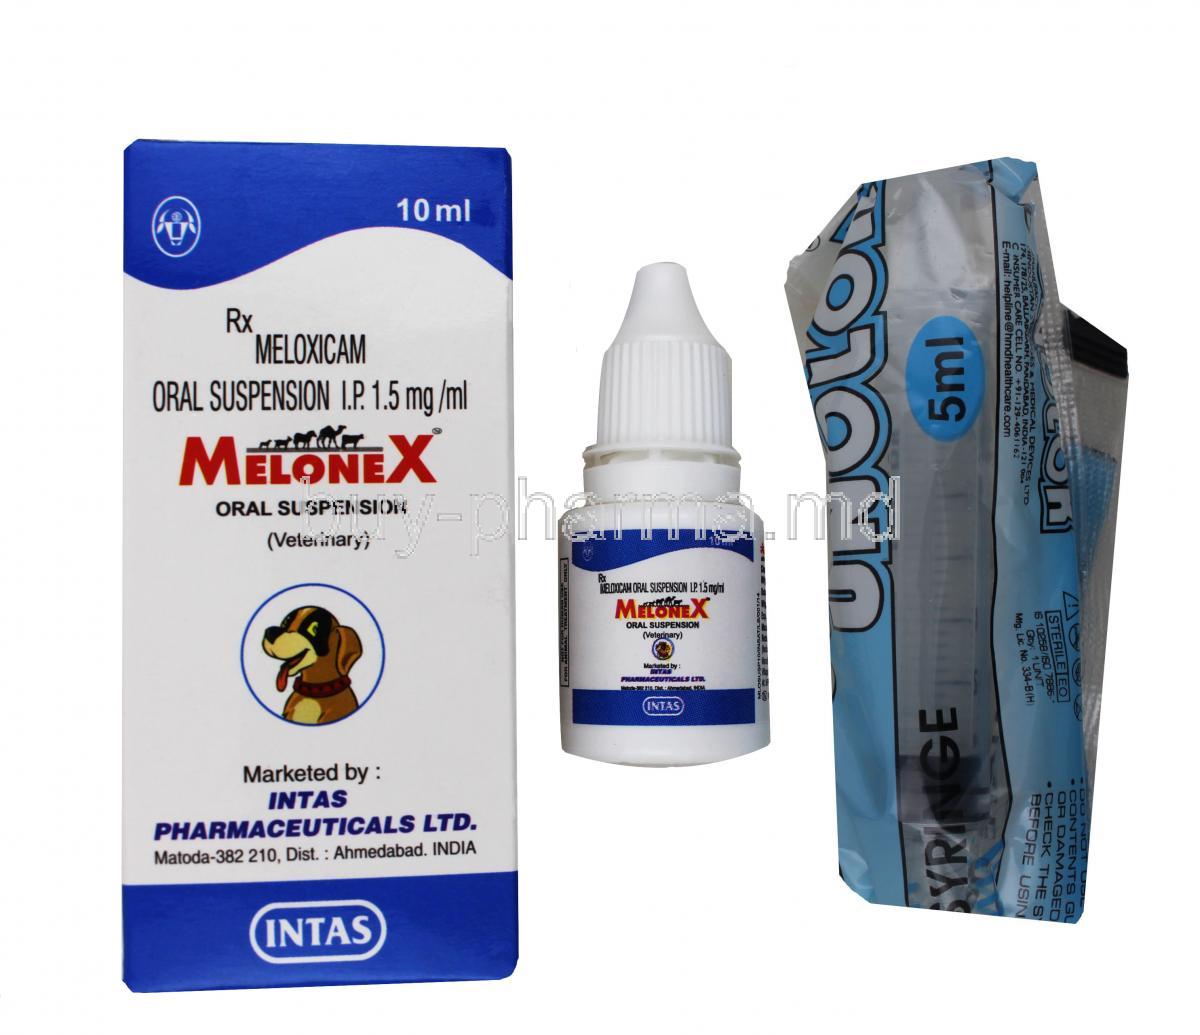 MELONEX Oral Suspension, Meloxicam, 10ml, box, bottle, syringe